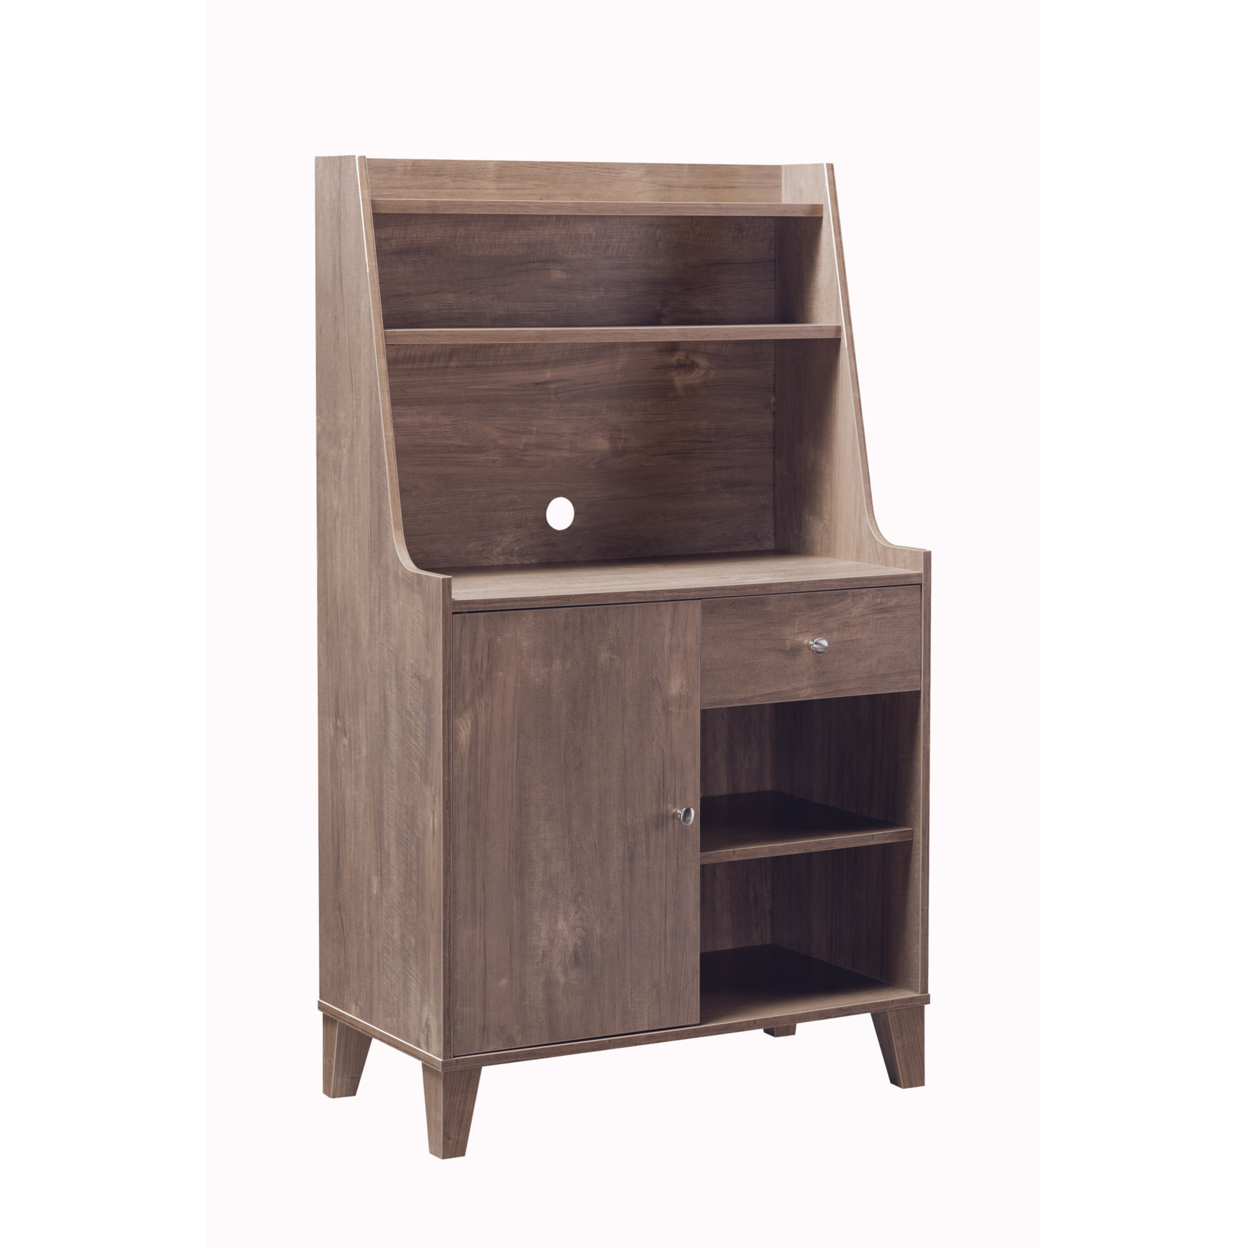 Wooden 1 Door Bakers Cabinet with 2 Top Shelves and 1 Drawer, Brown- Saltoro Sherpi